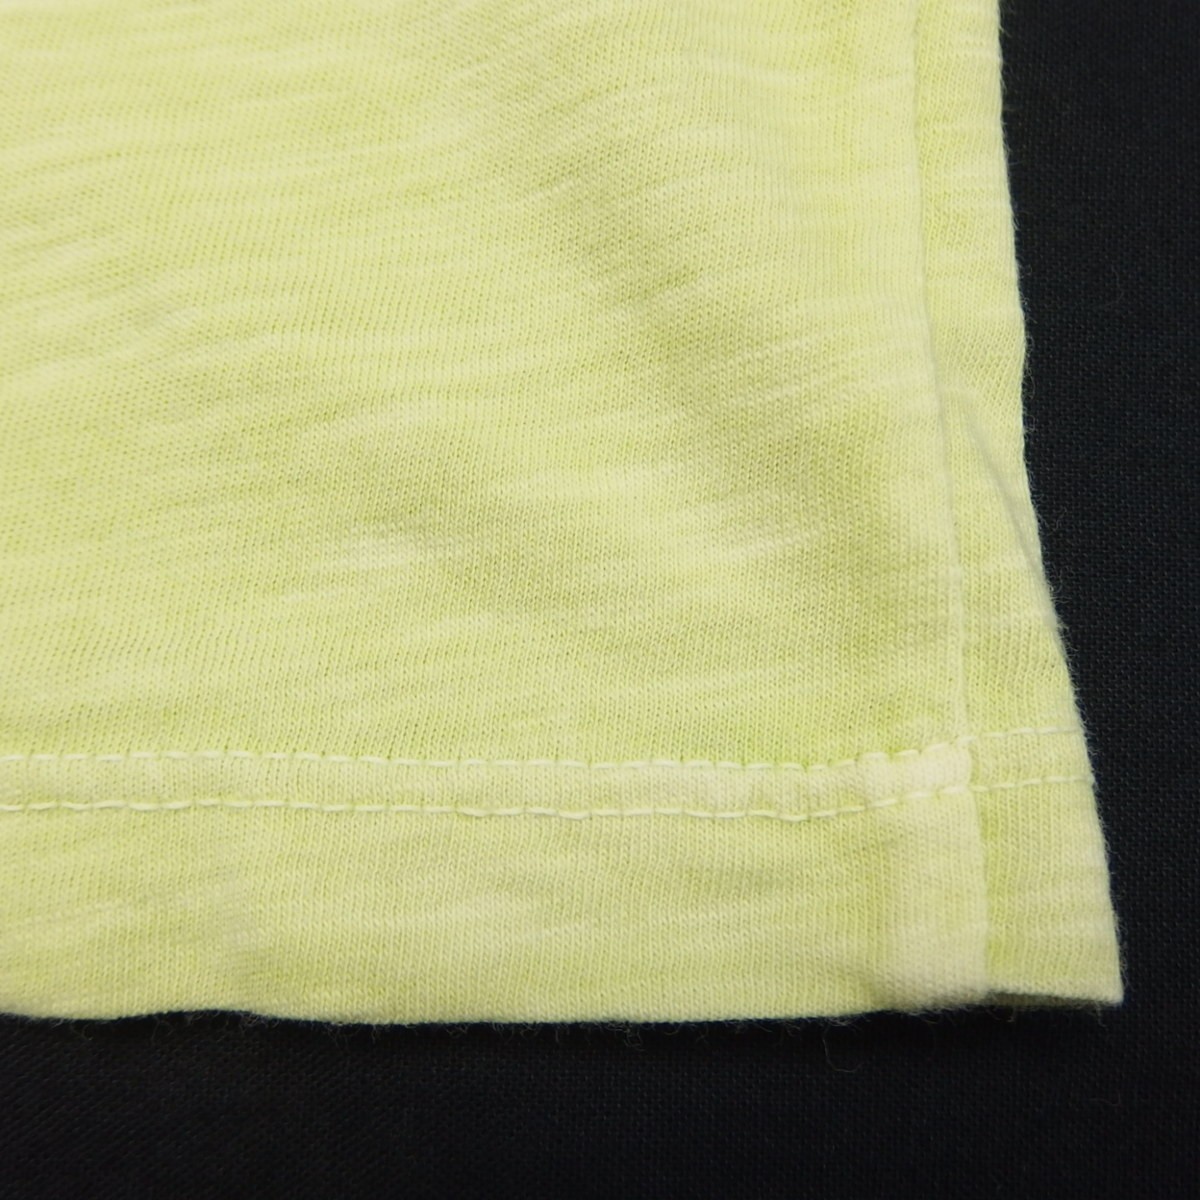 BEAMS California Beams California cotton short sleeves plain pocket TEE T-shirt cut and sewn MADE IN USA LIGHT GREEN 1